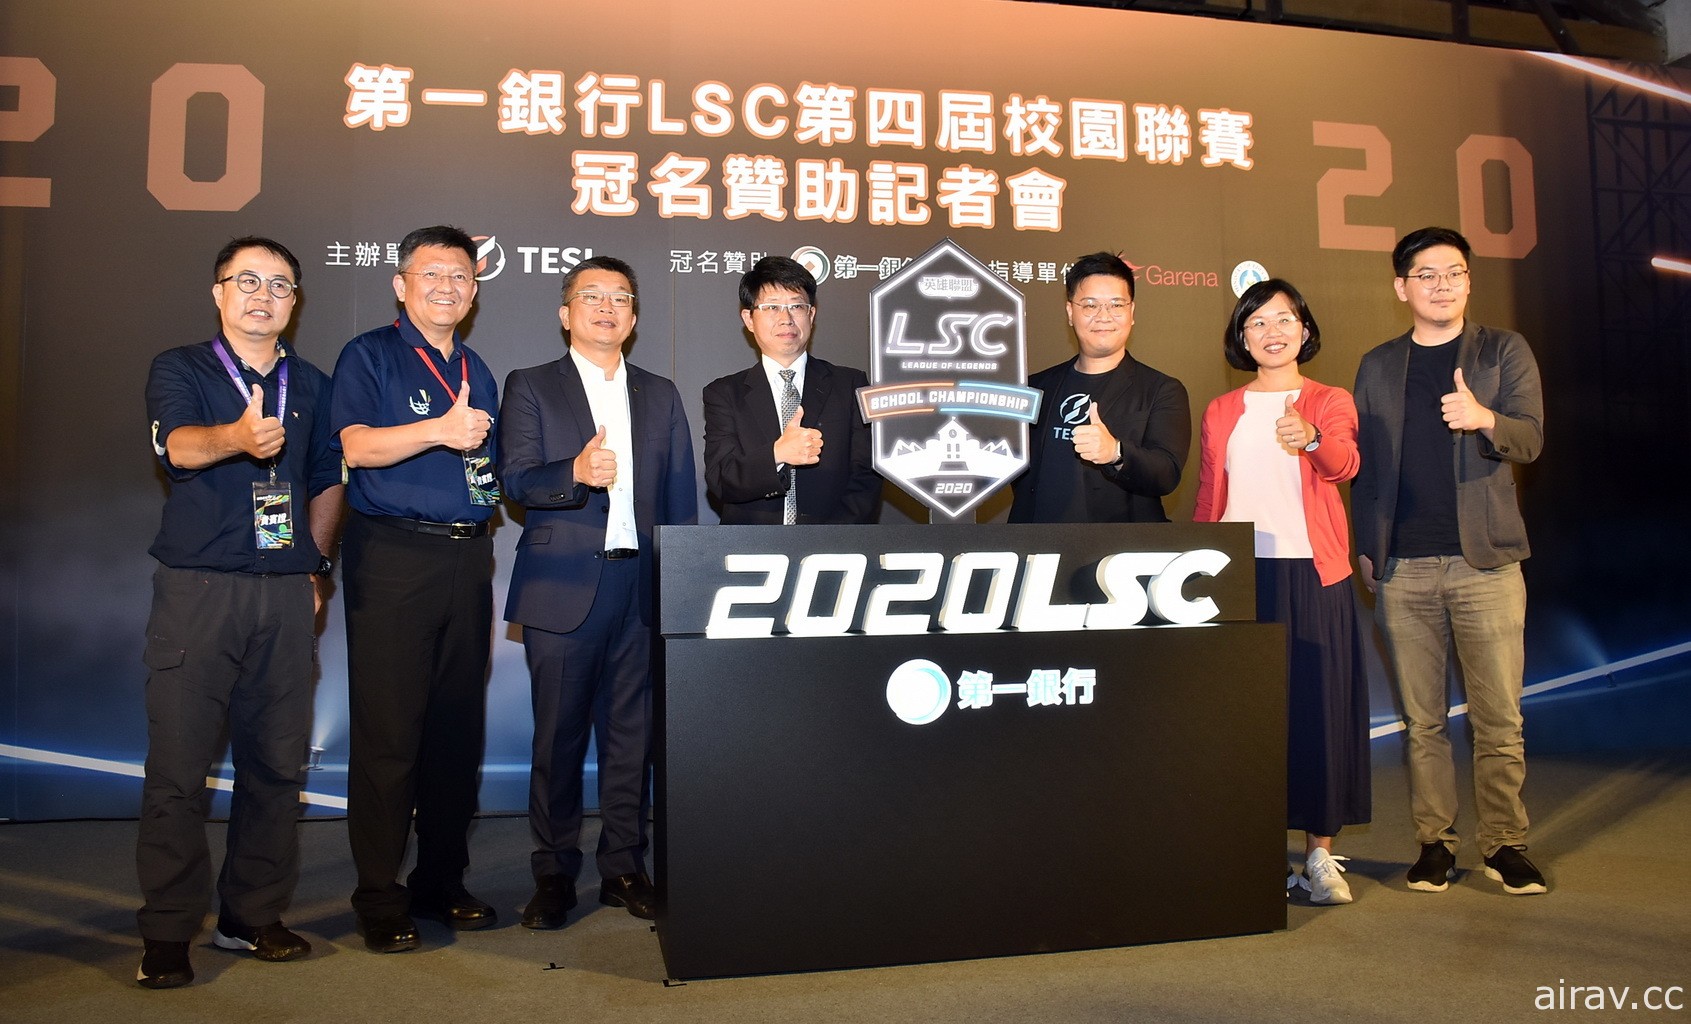 第一银行冠名赞助《英雄联盟》第四届校园电竞联赛 LSC 期待培养更多台湾电竞人才